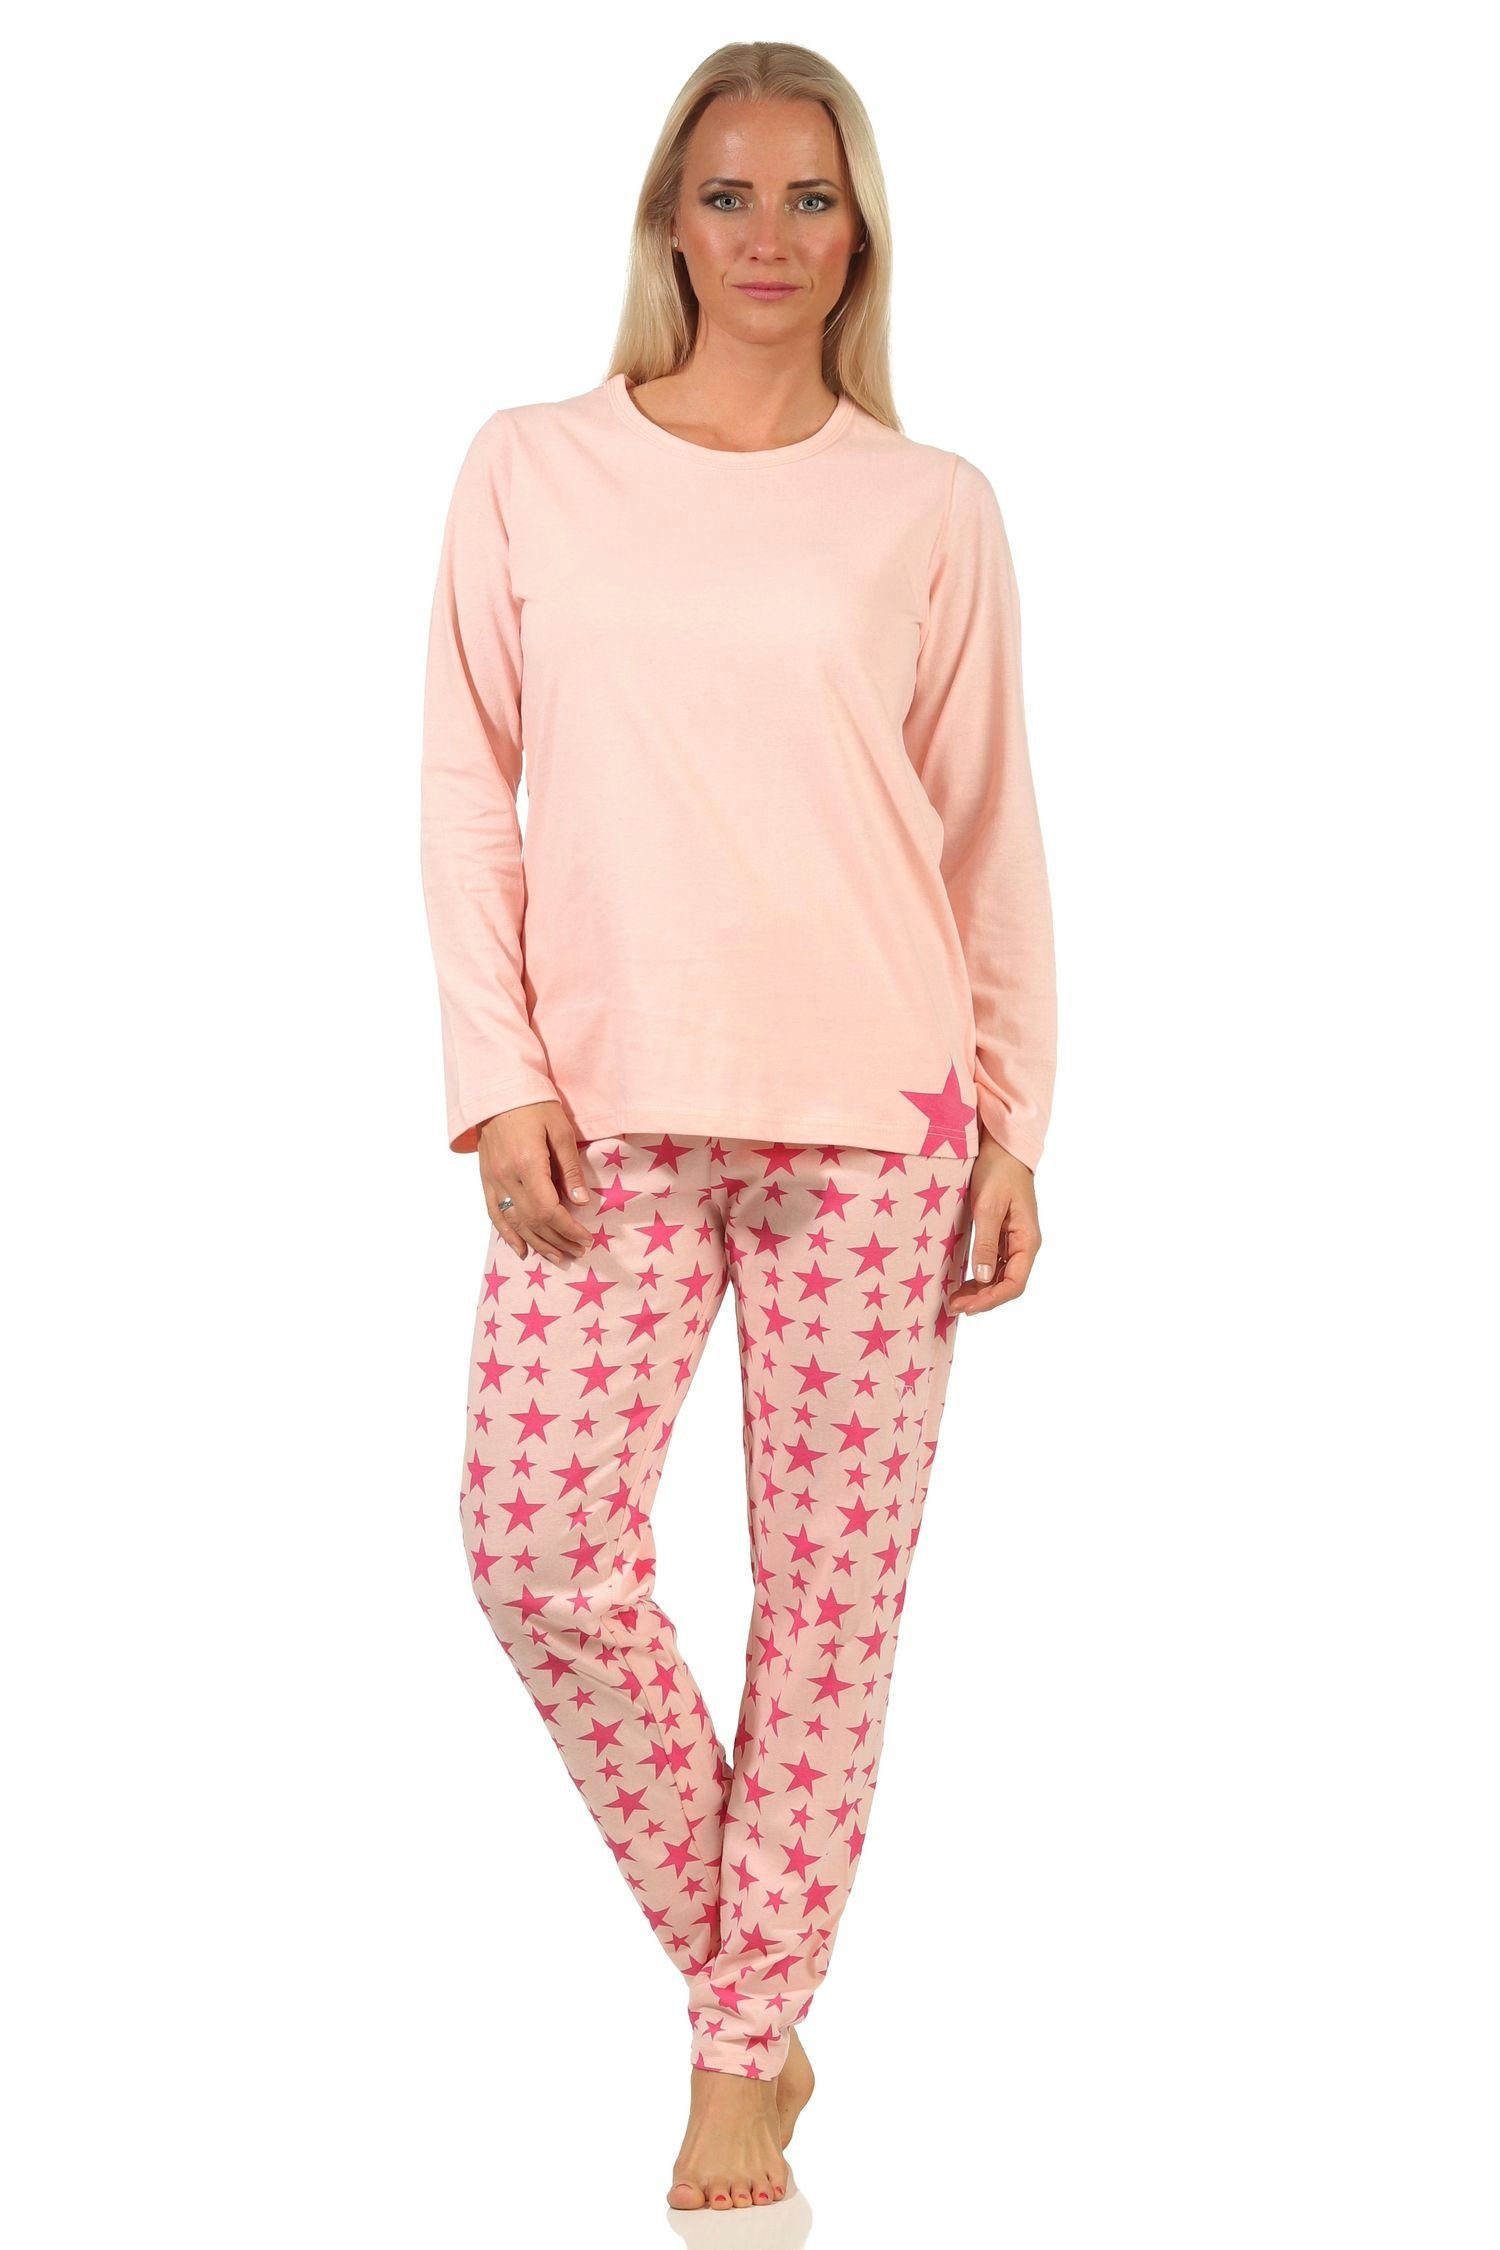 rosa Schlafanzug, RELAX by Pyjama in Damen Pyjama Sterne-Optik 66537 Normann langarm